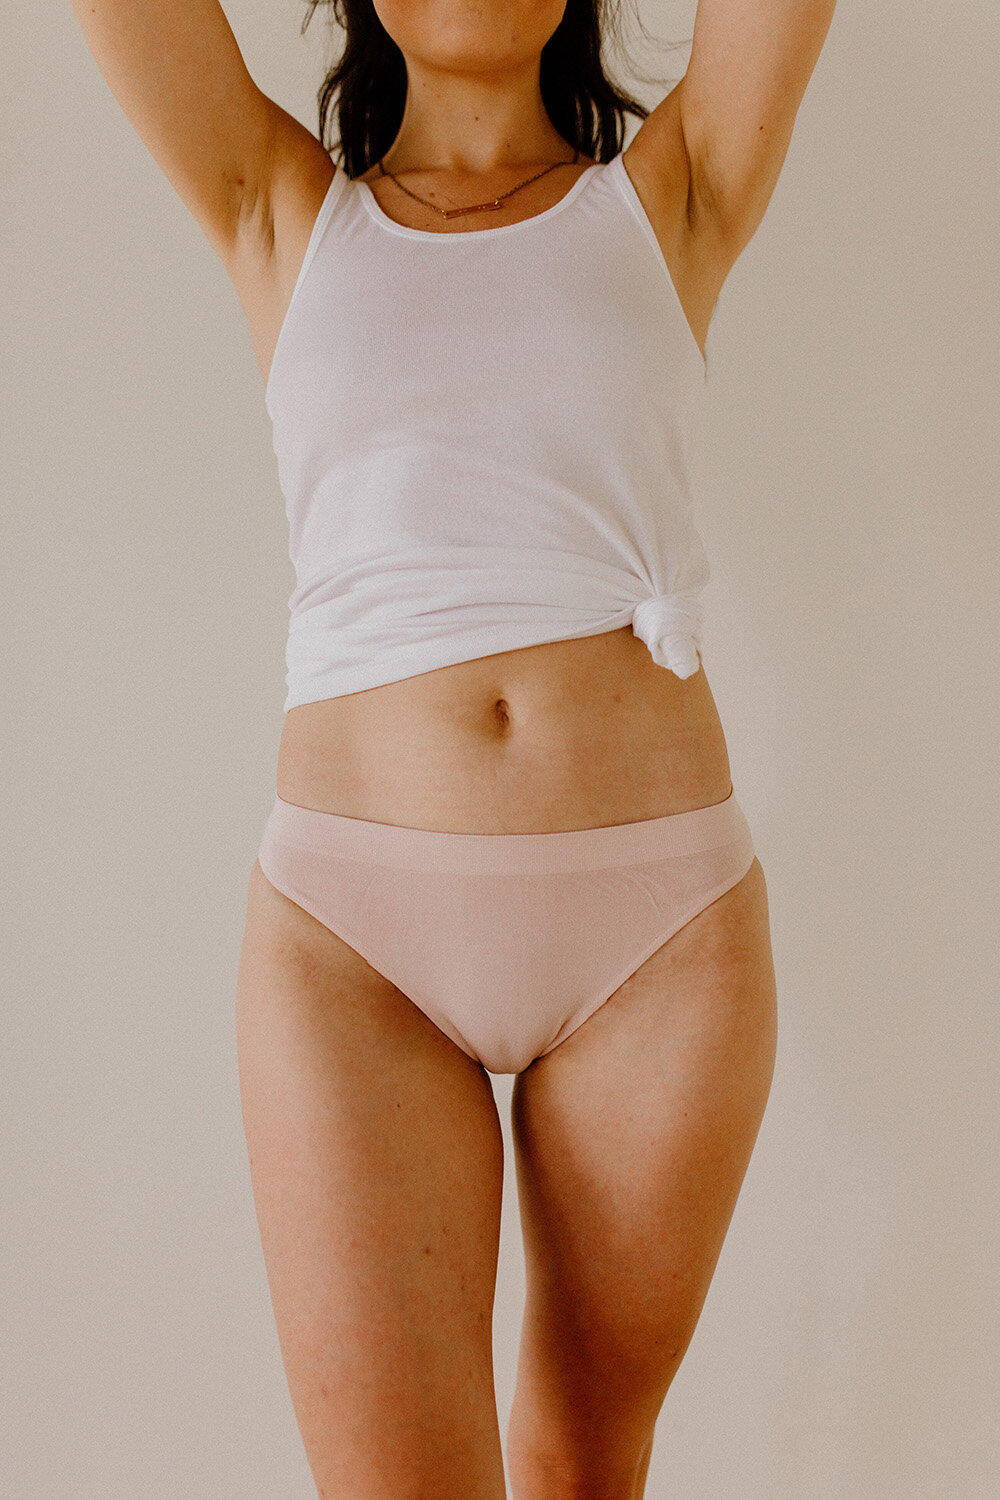 Women underwear online, Bamboo panties